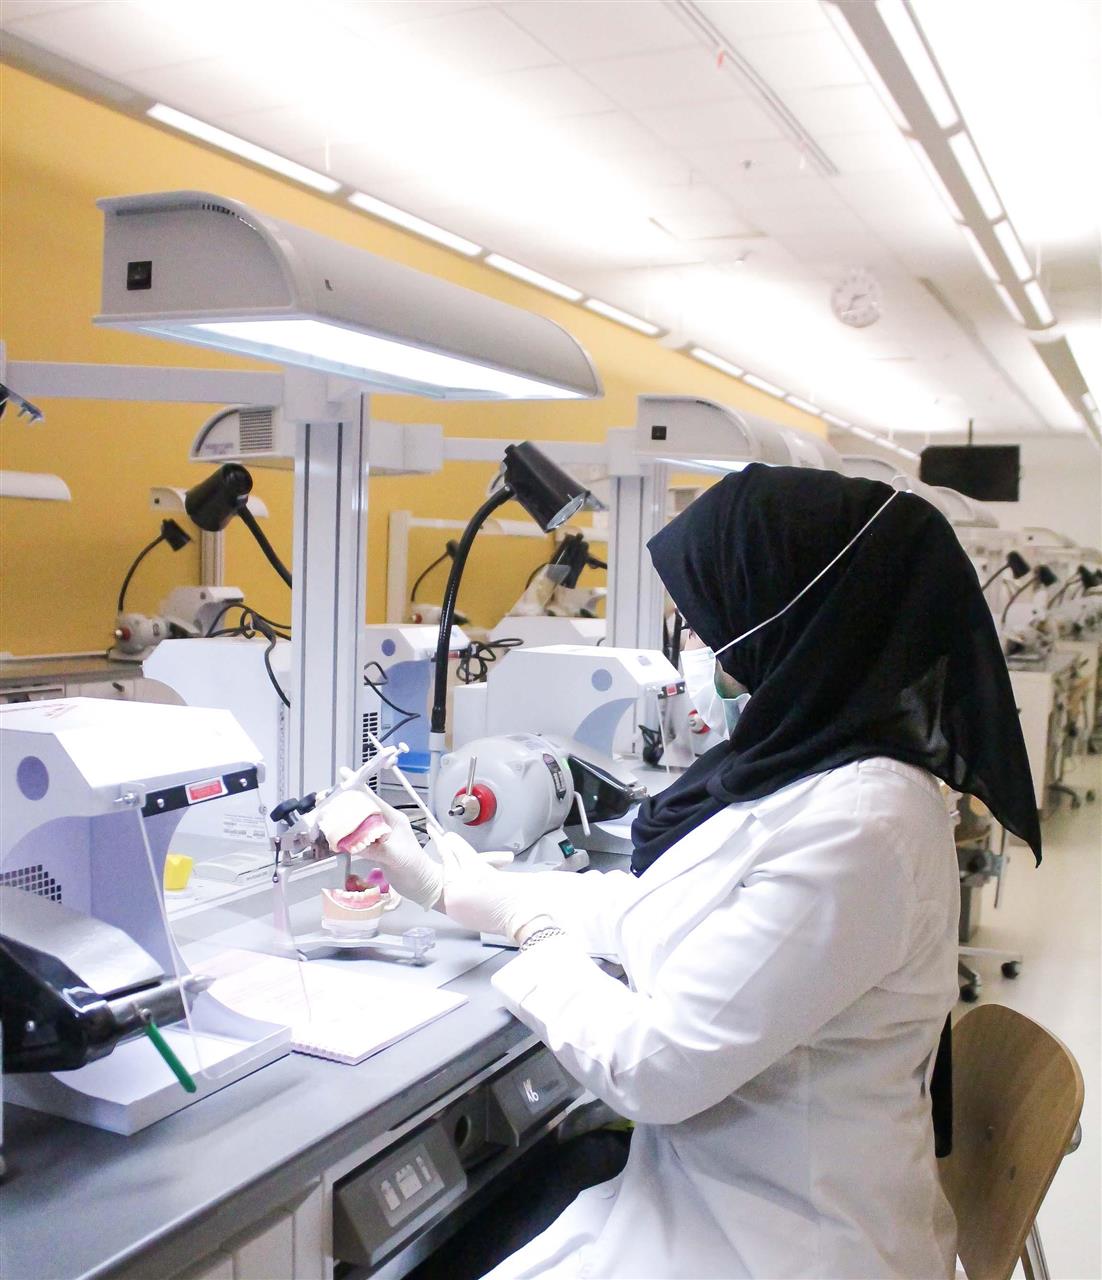 تمكين المرأة: تعتبر المرأة السعودية ركيزة أساسية في دفع عجلة التنمية وبناء المجتمع - معنى تمكين المرأة